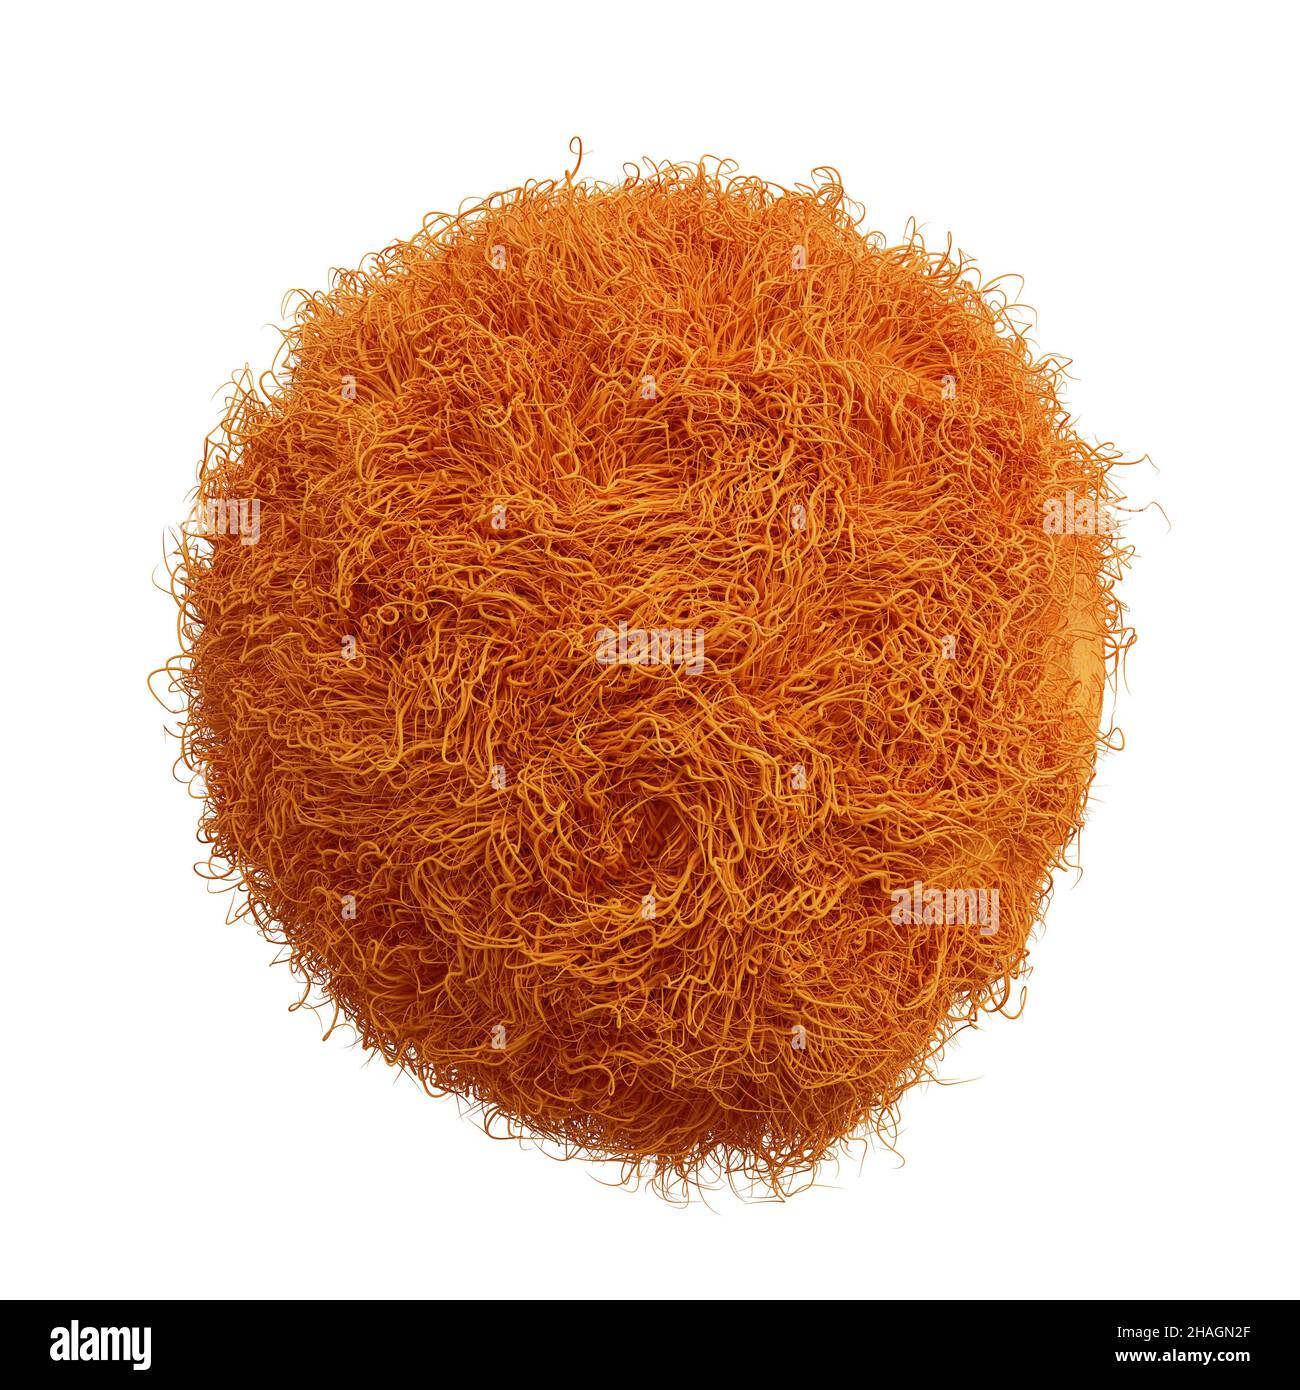 palla soffice, sfera arancione furry isolato su sfondo bianco Foto Stock